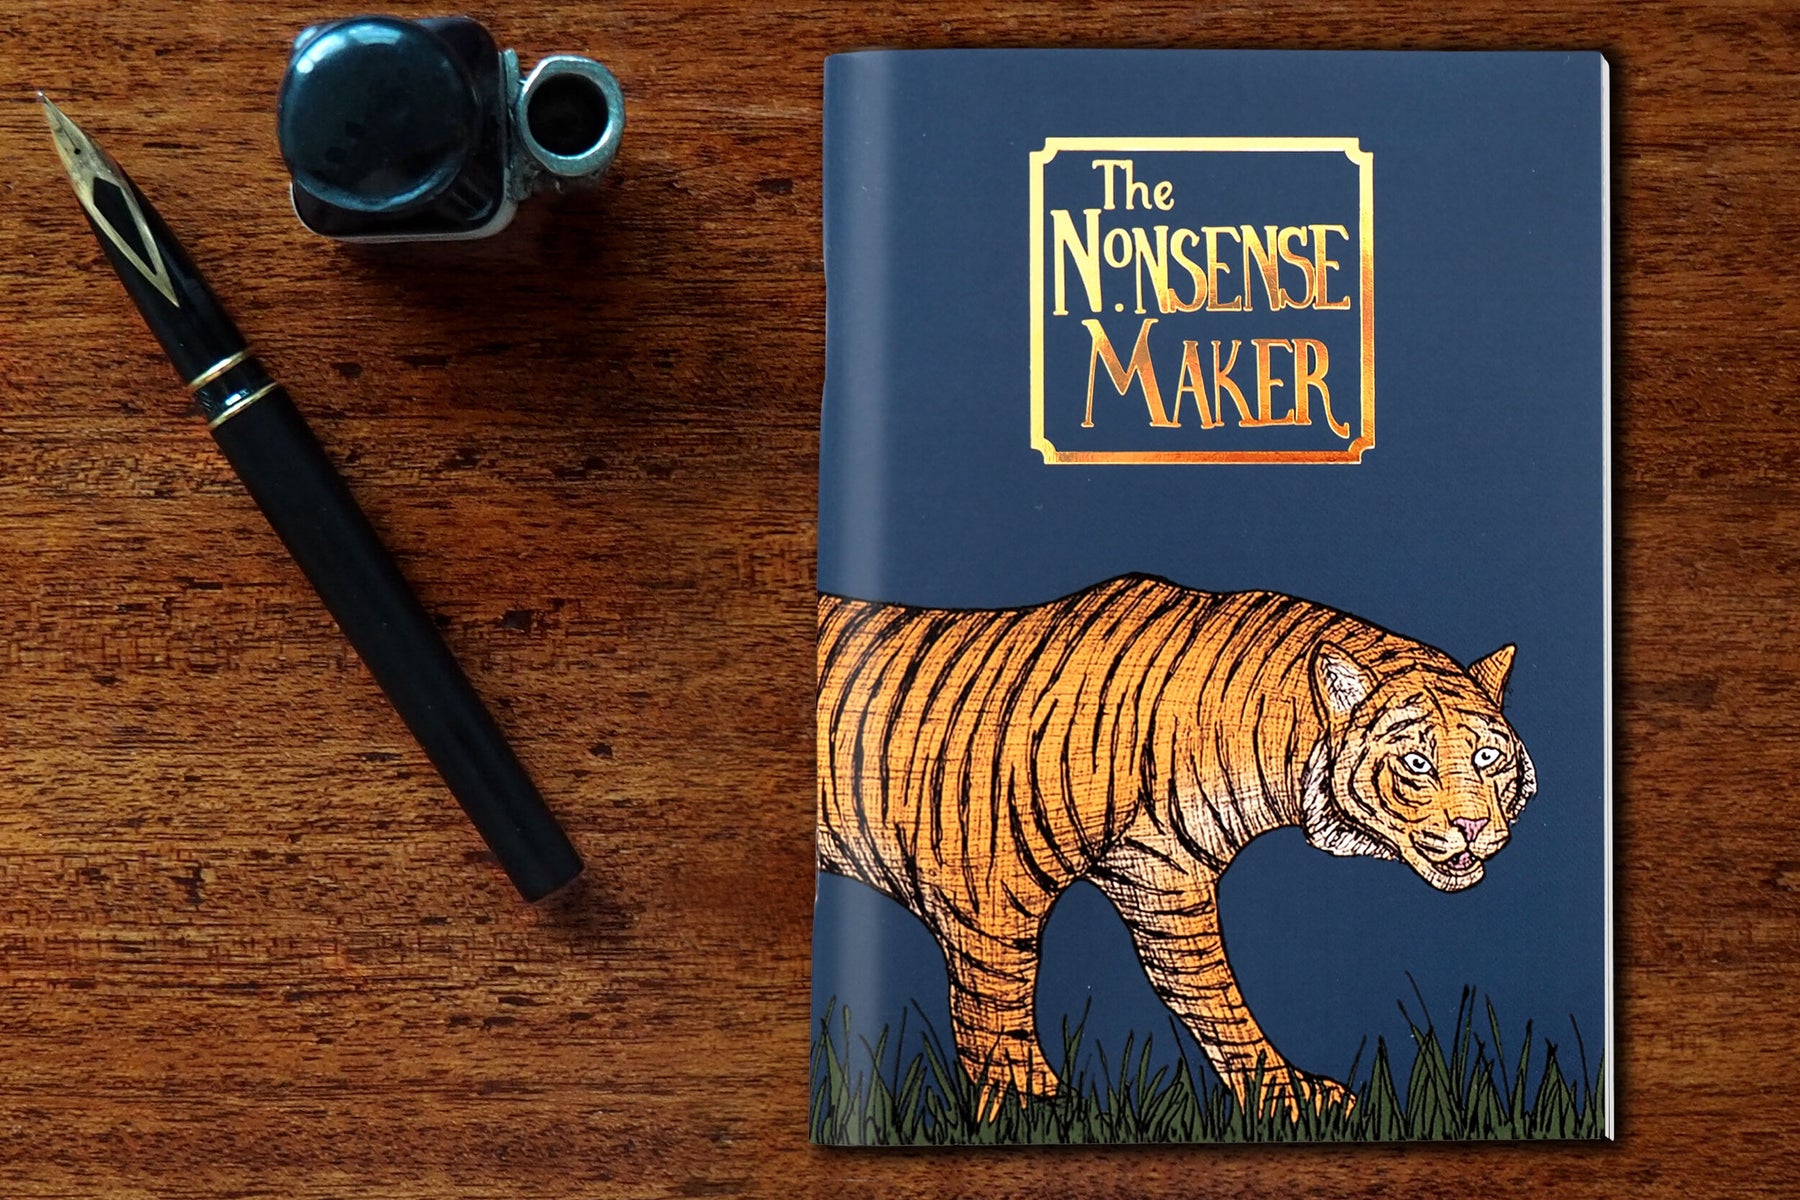 Tiger Pocket Notebook